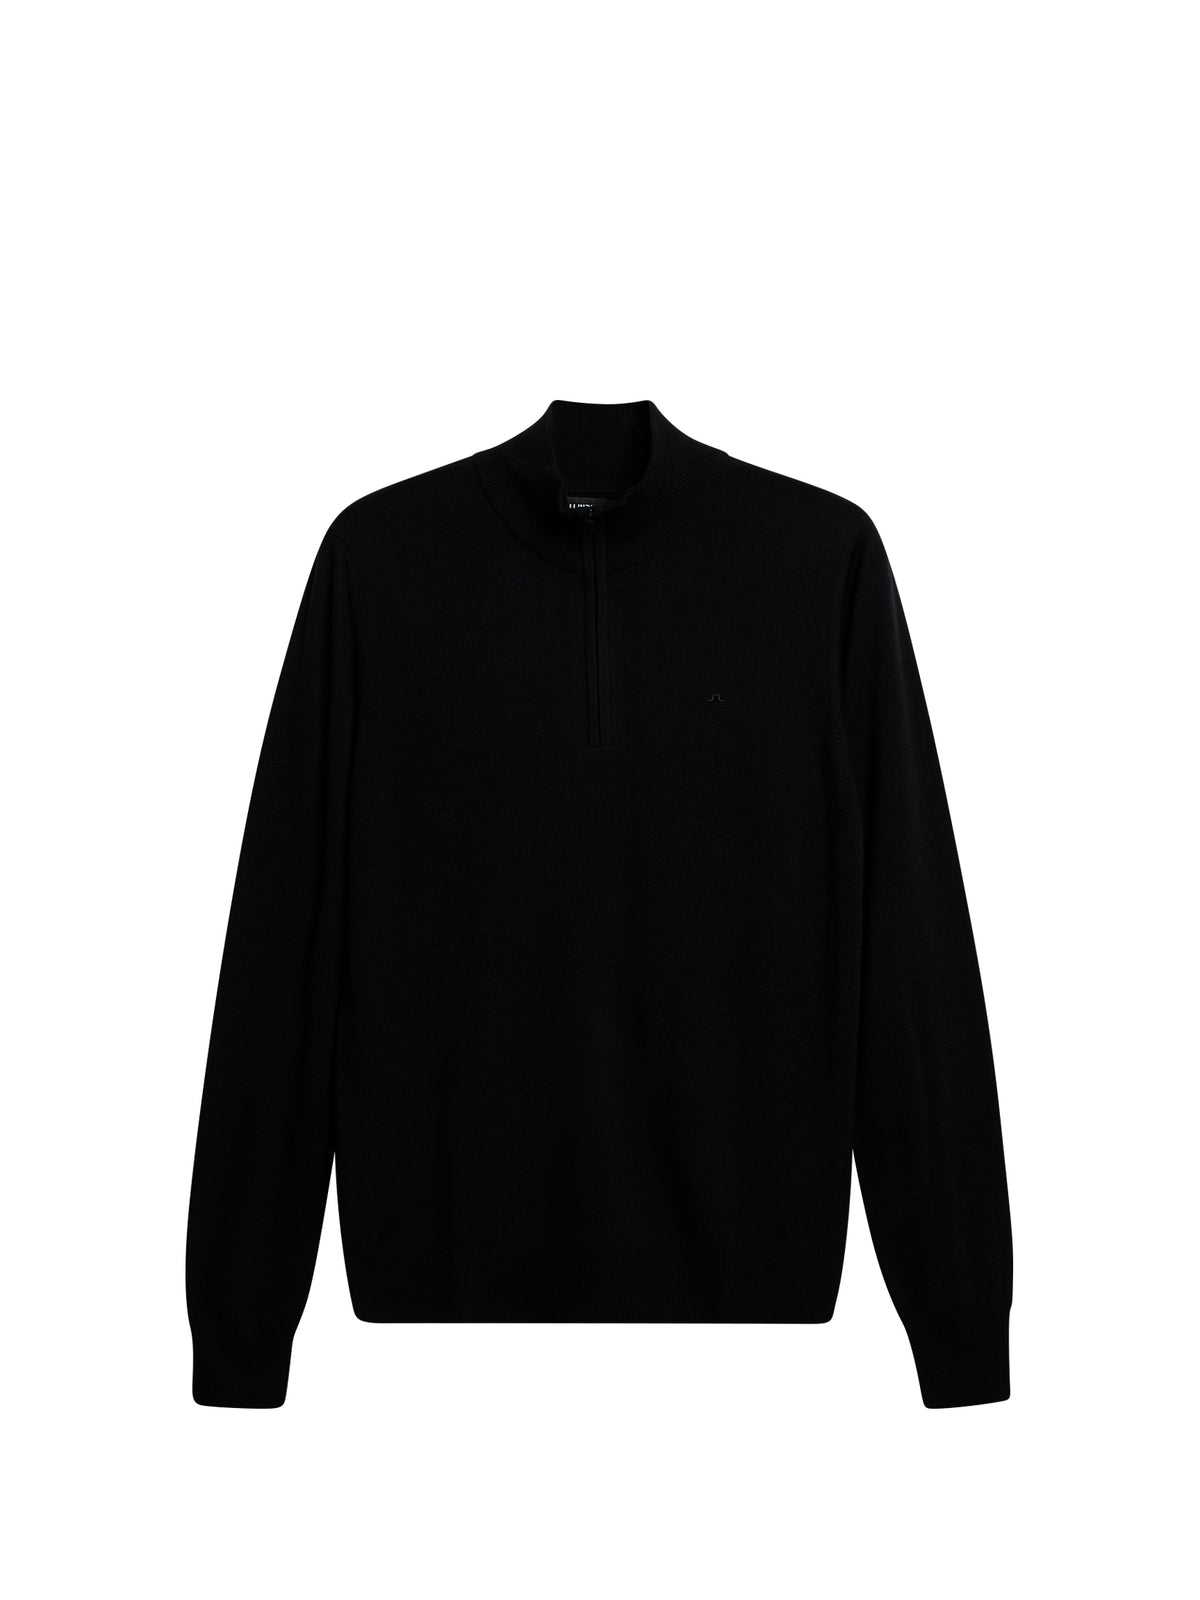 Kiyan Quarter Zip Sweater / Black